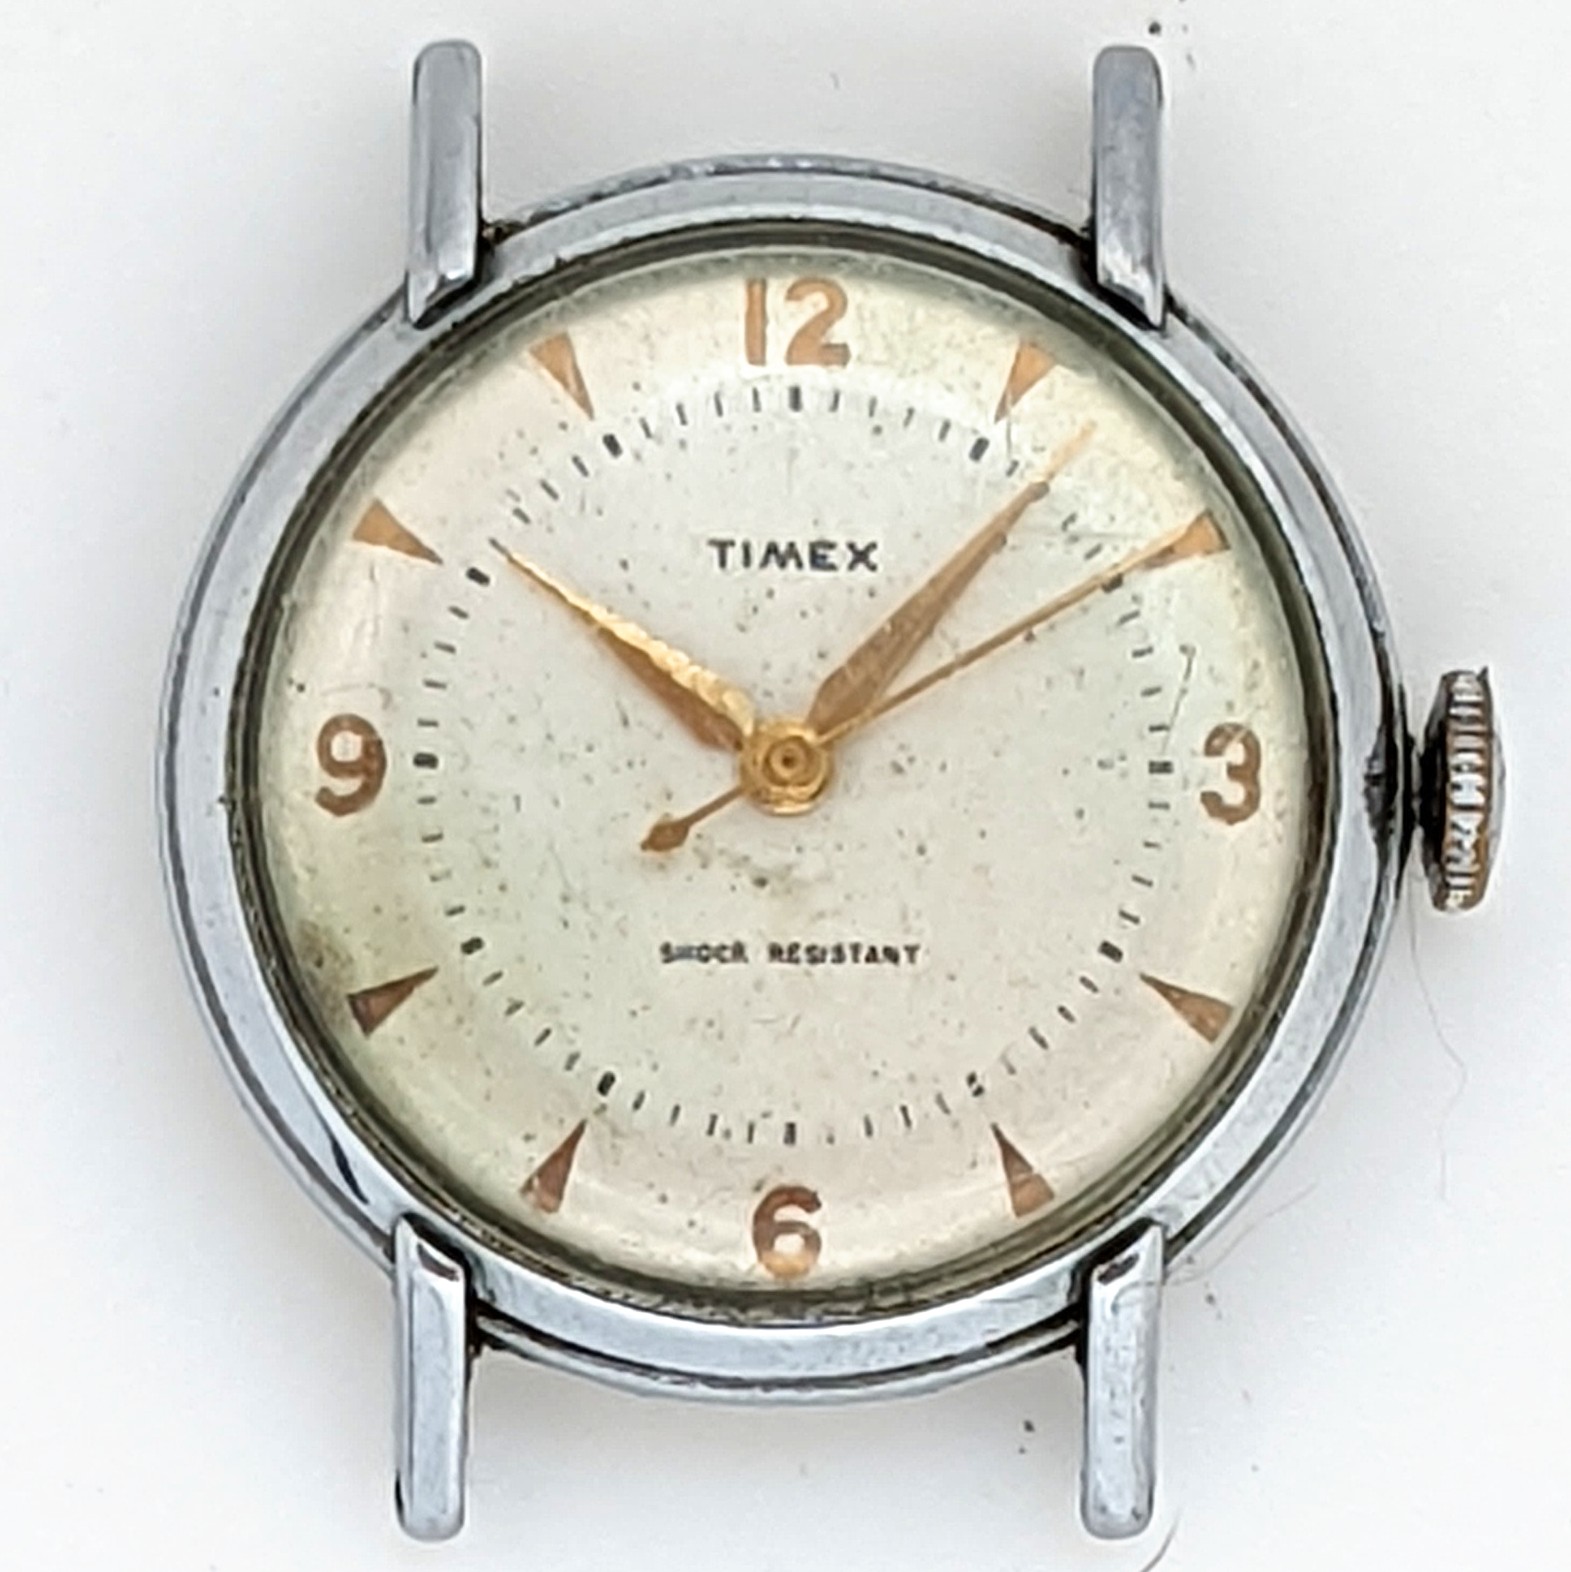 Timex B Series [1955]